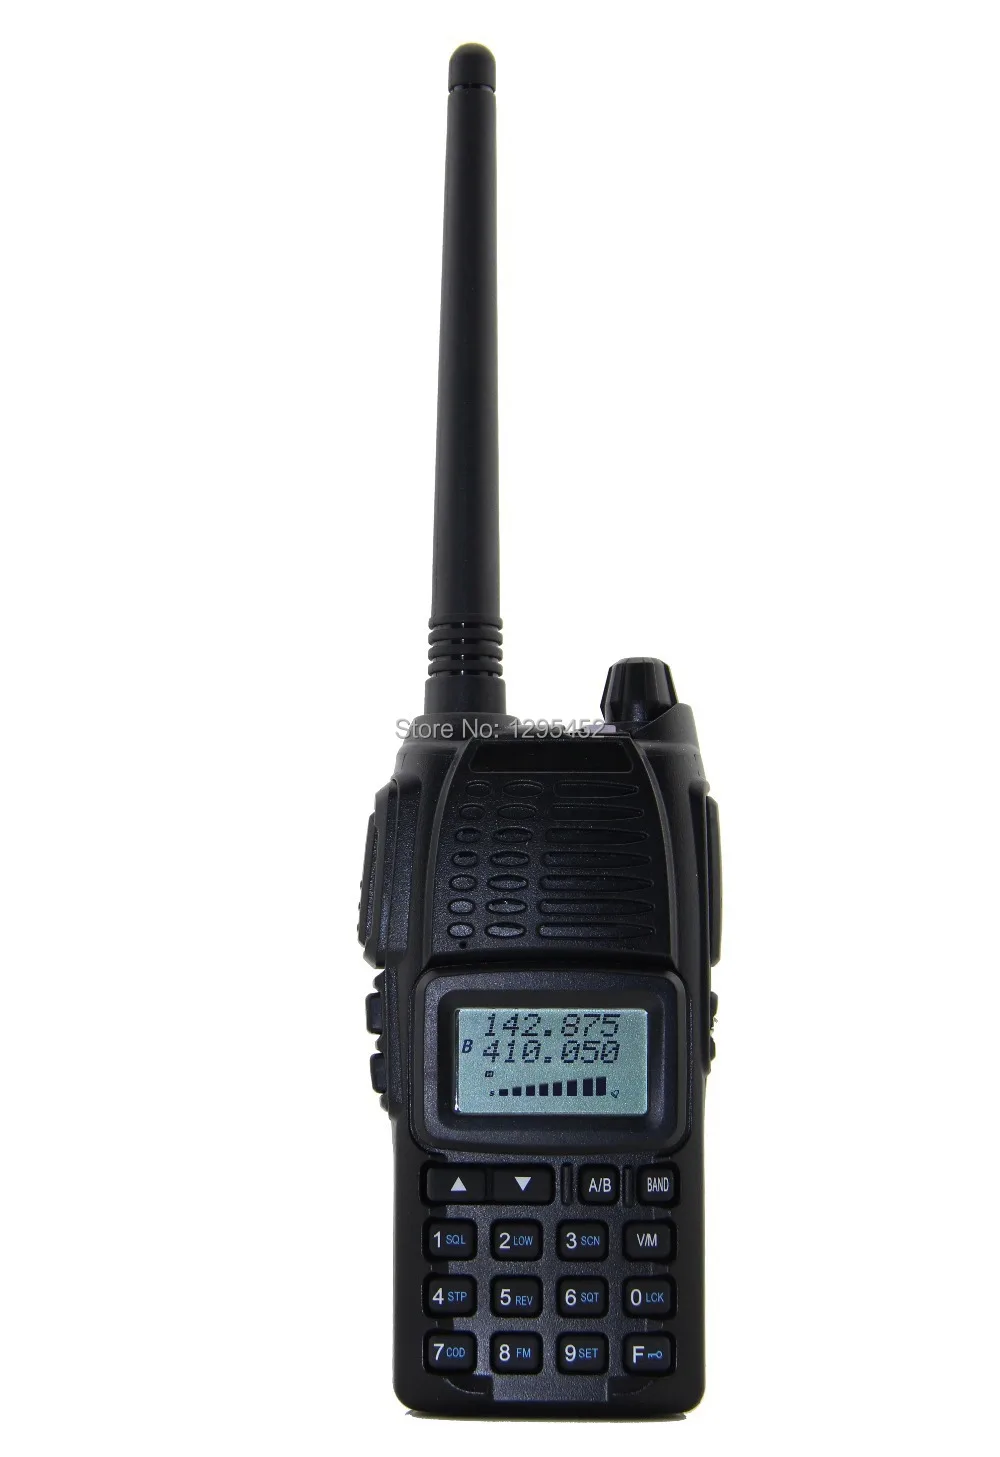 Zastone UV-55 двухдиапазонное радио 136-174 МГц и 400-470 МГц с большим дисплеем